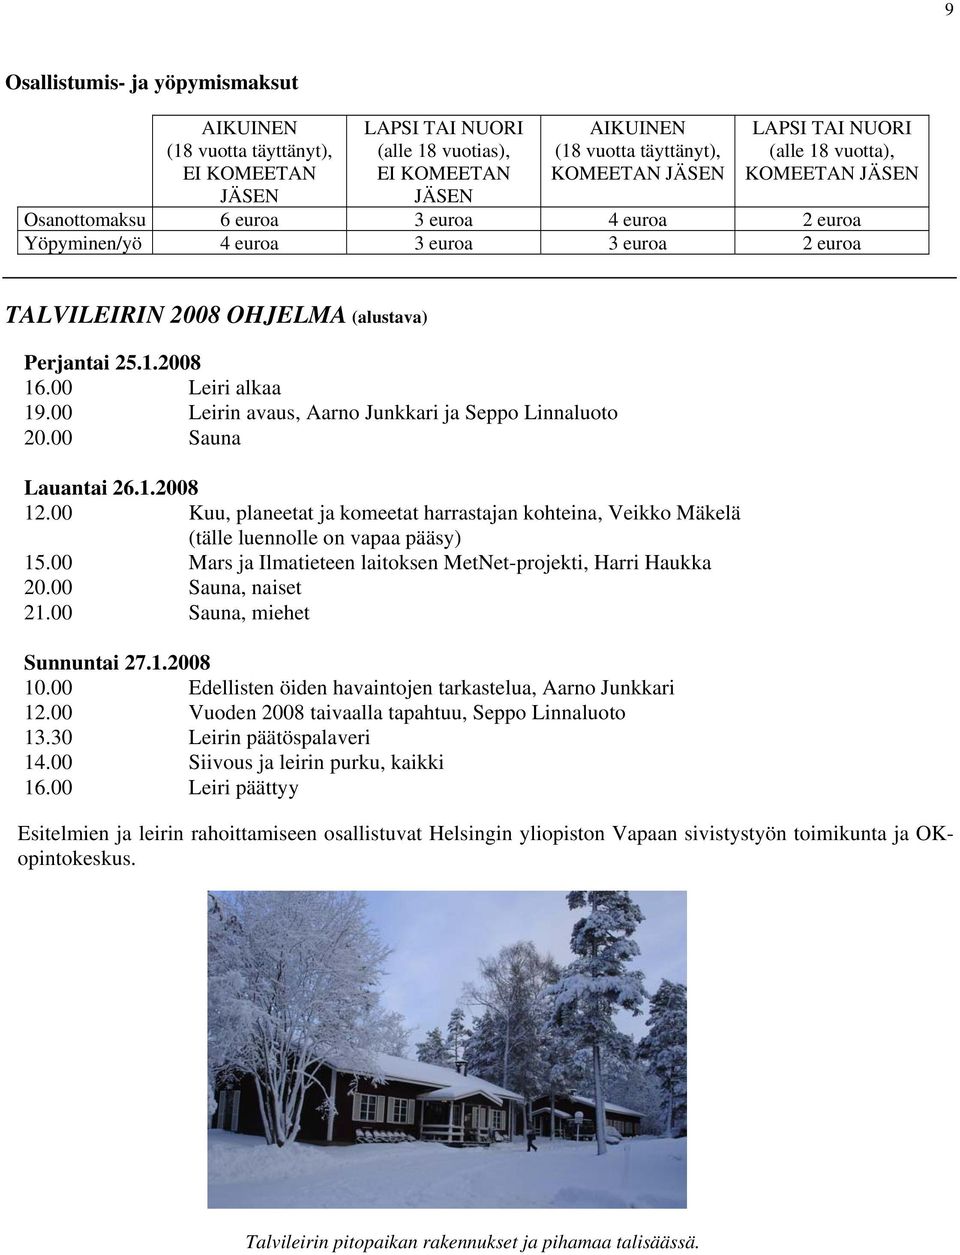 00 Leiri alkaa 19.00 Leirin avaus, Aarno Junkkari ja Seppo Linnaluoto 20.00 Sauna Lauantai 26.1.2008 12.